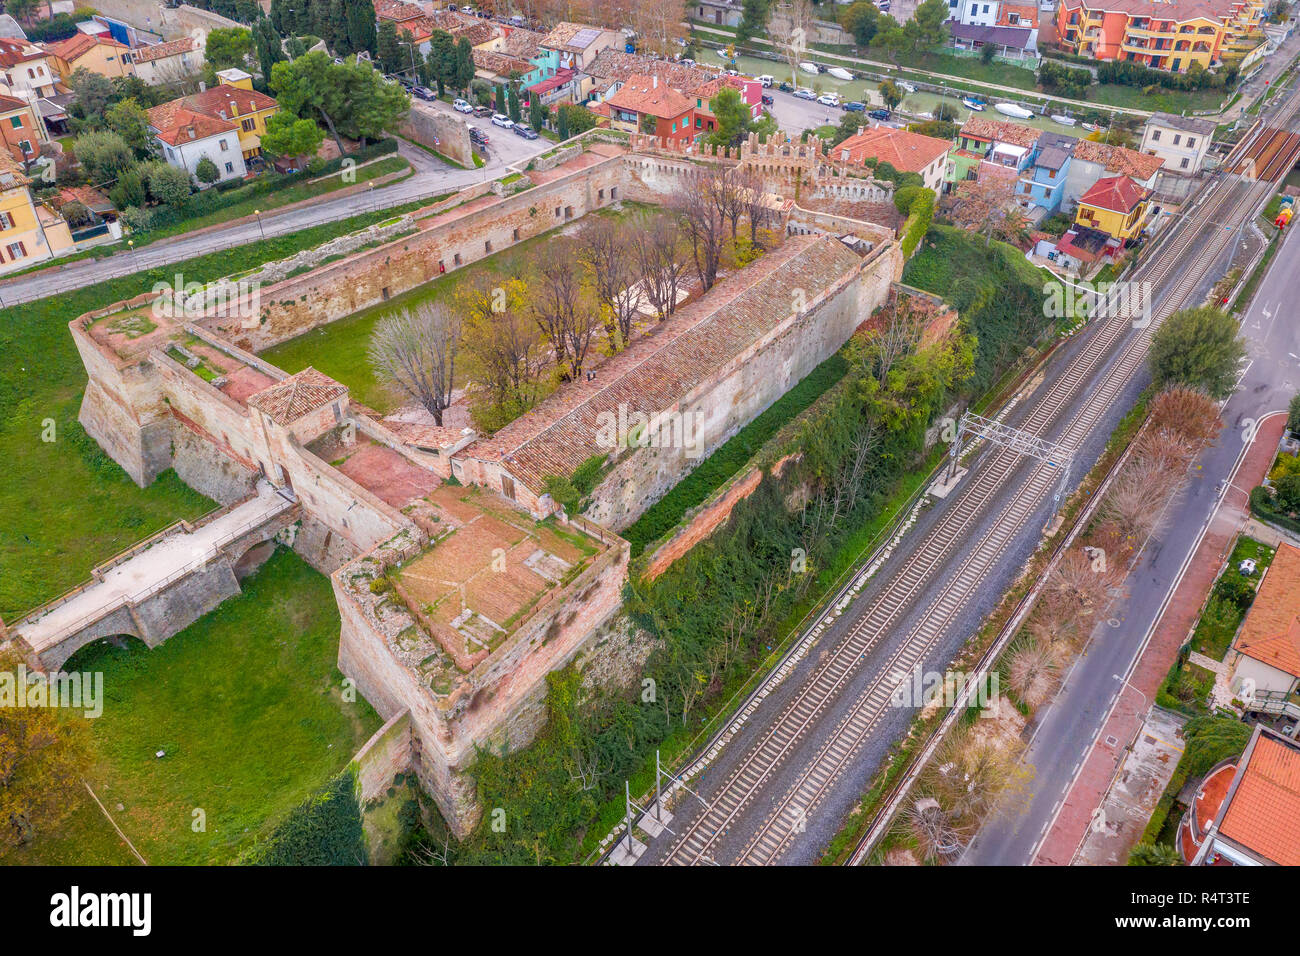 Vista aerea delle fortificazioni medievali di meta turistica apprezzata località balneare Fano in Italia vicino a Rimini nella regione Marche. Foto Stock